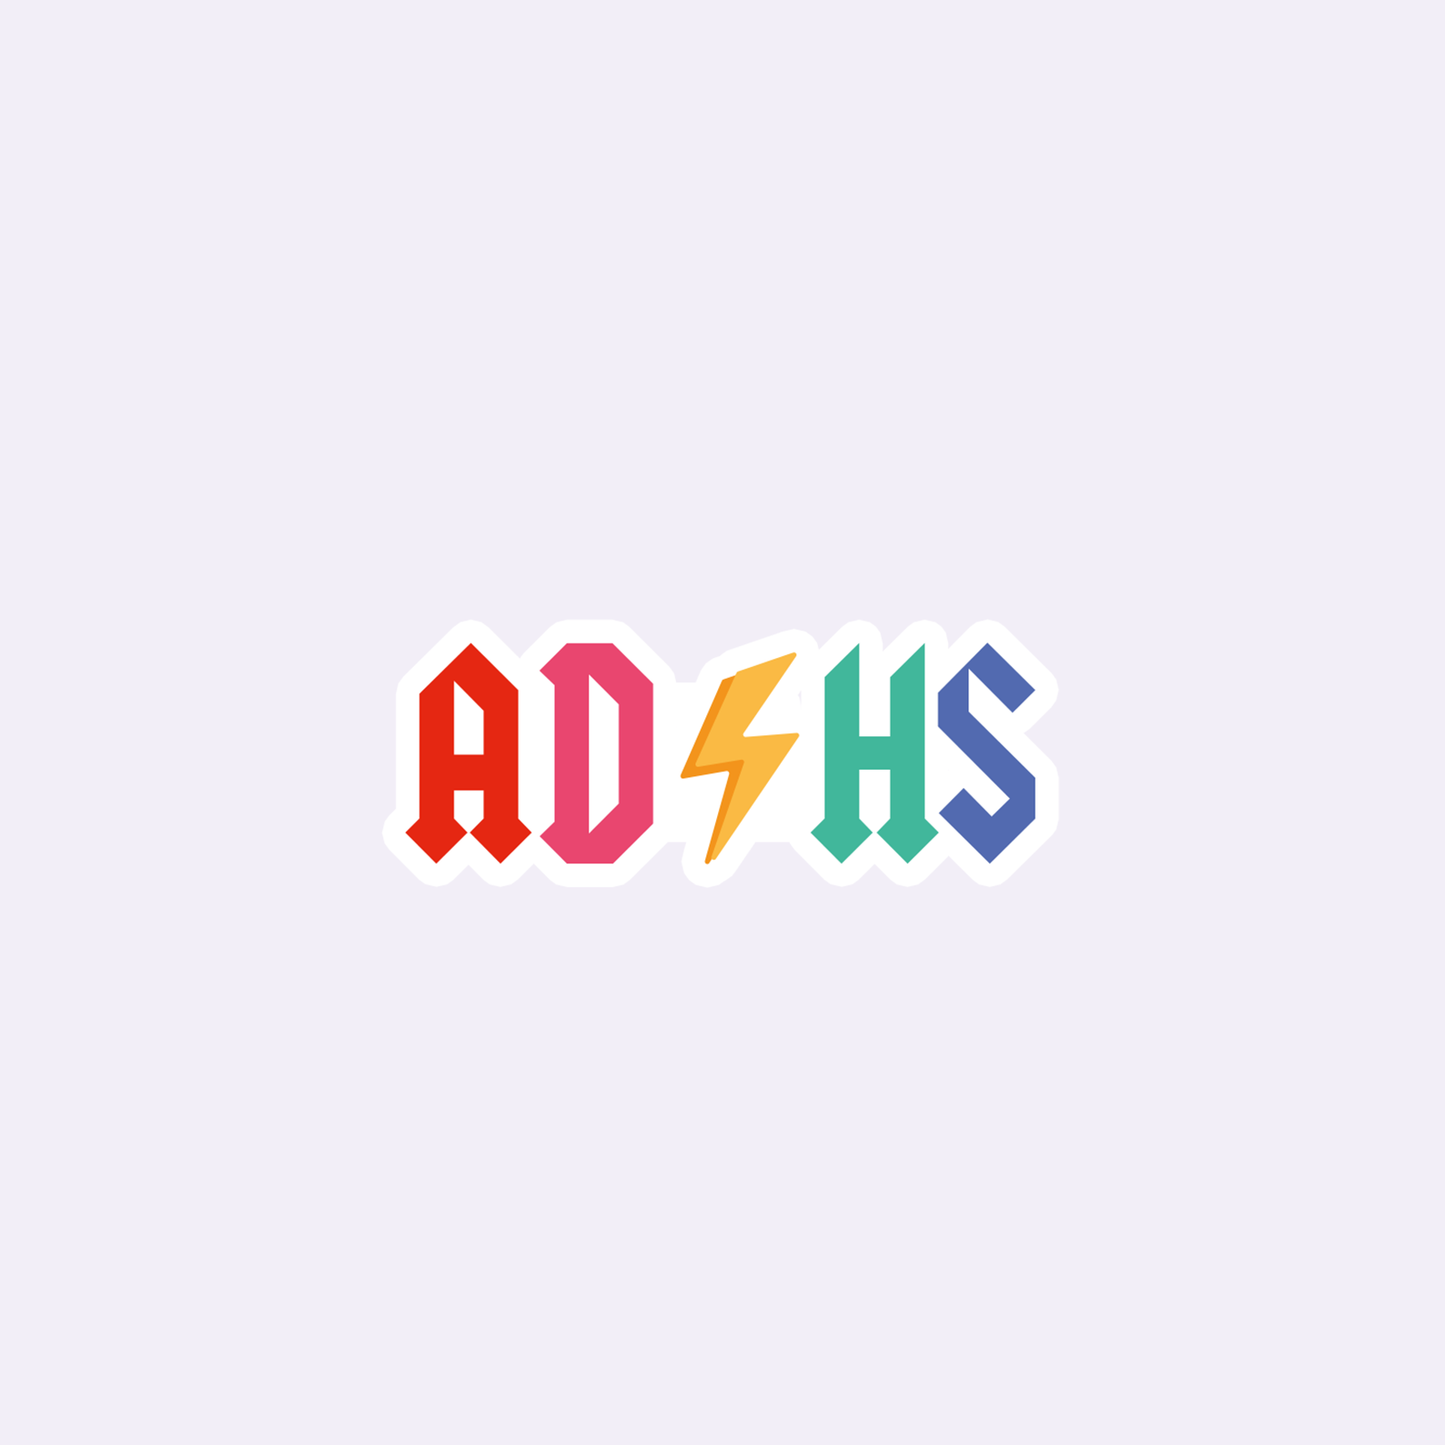 ADHS Vinyl Sticker